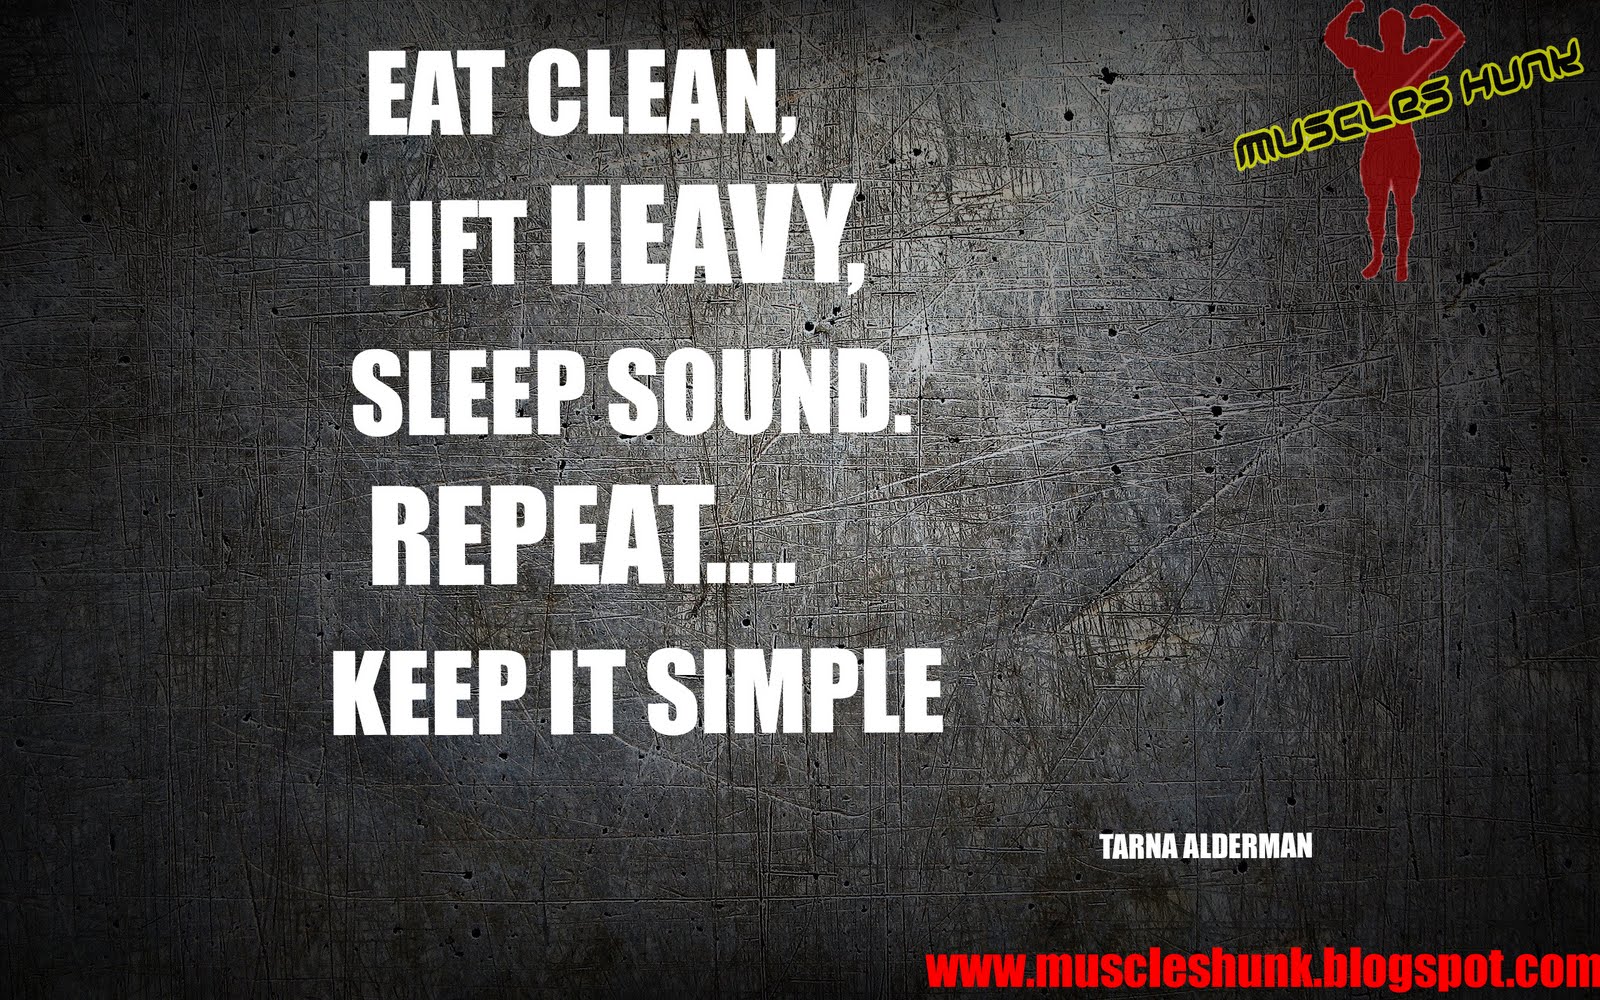 Best Bodybuilding Motivational Quotes. QuotesGram